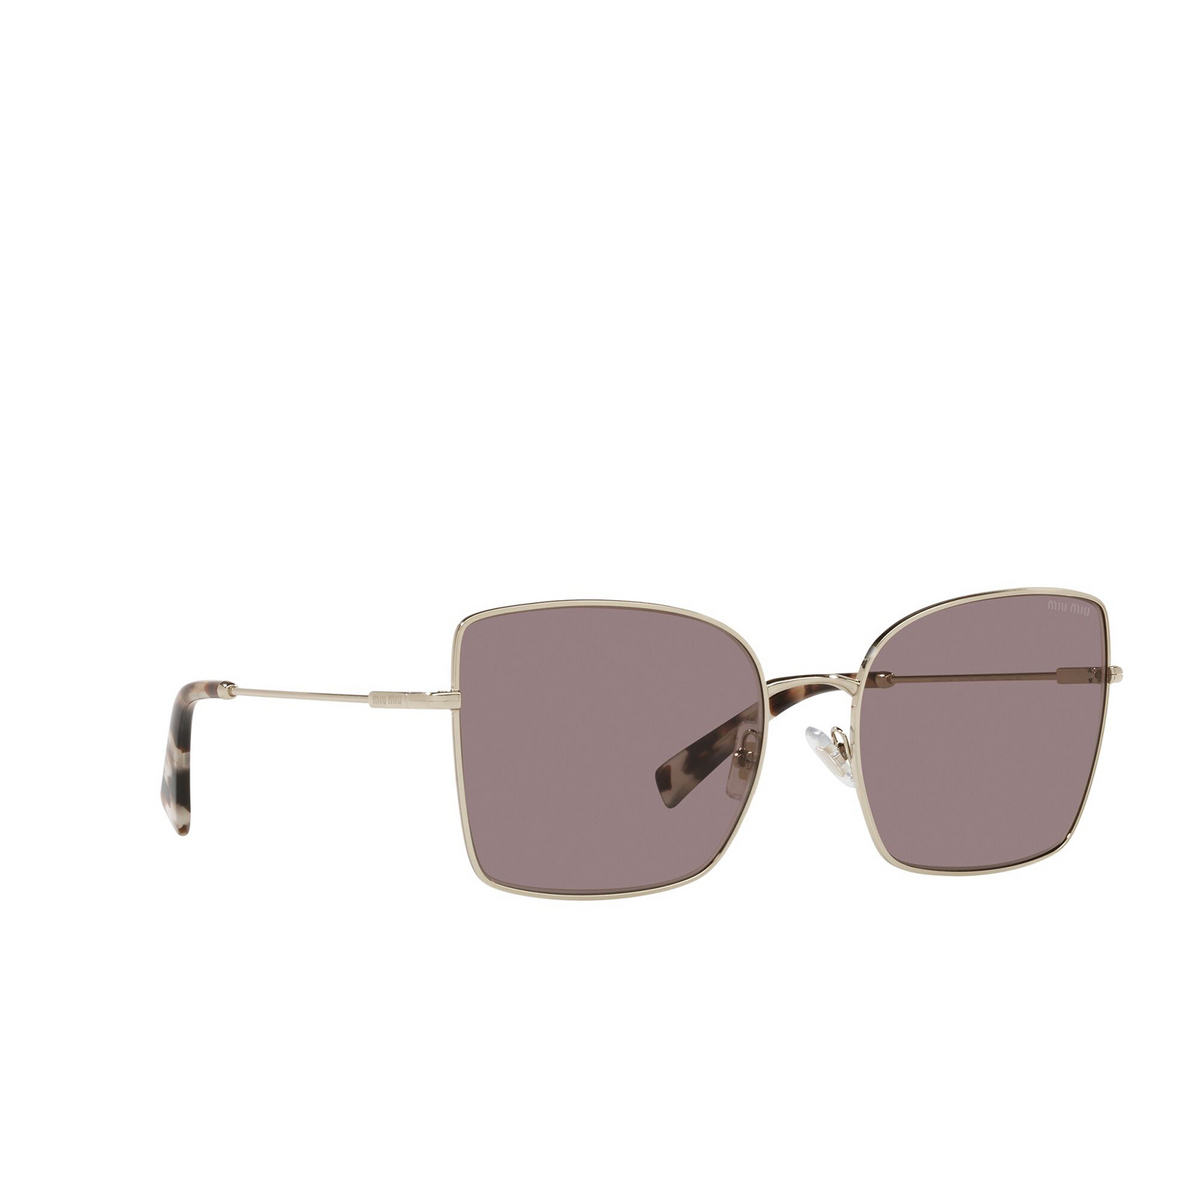 Miu Miu® Butterfly Sunglasses: MU 51WS color Pale Gold ZVN05P - three-quarters view.